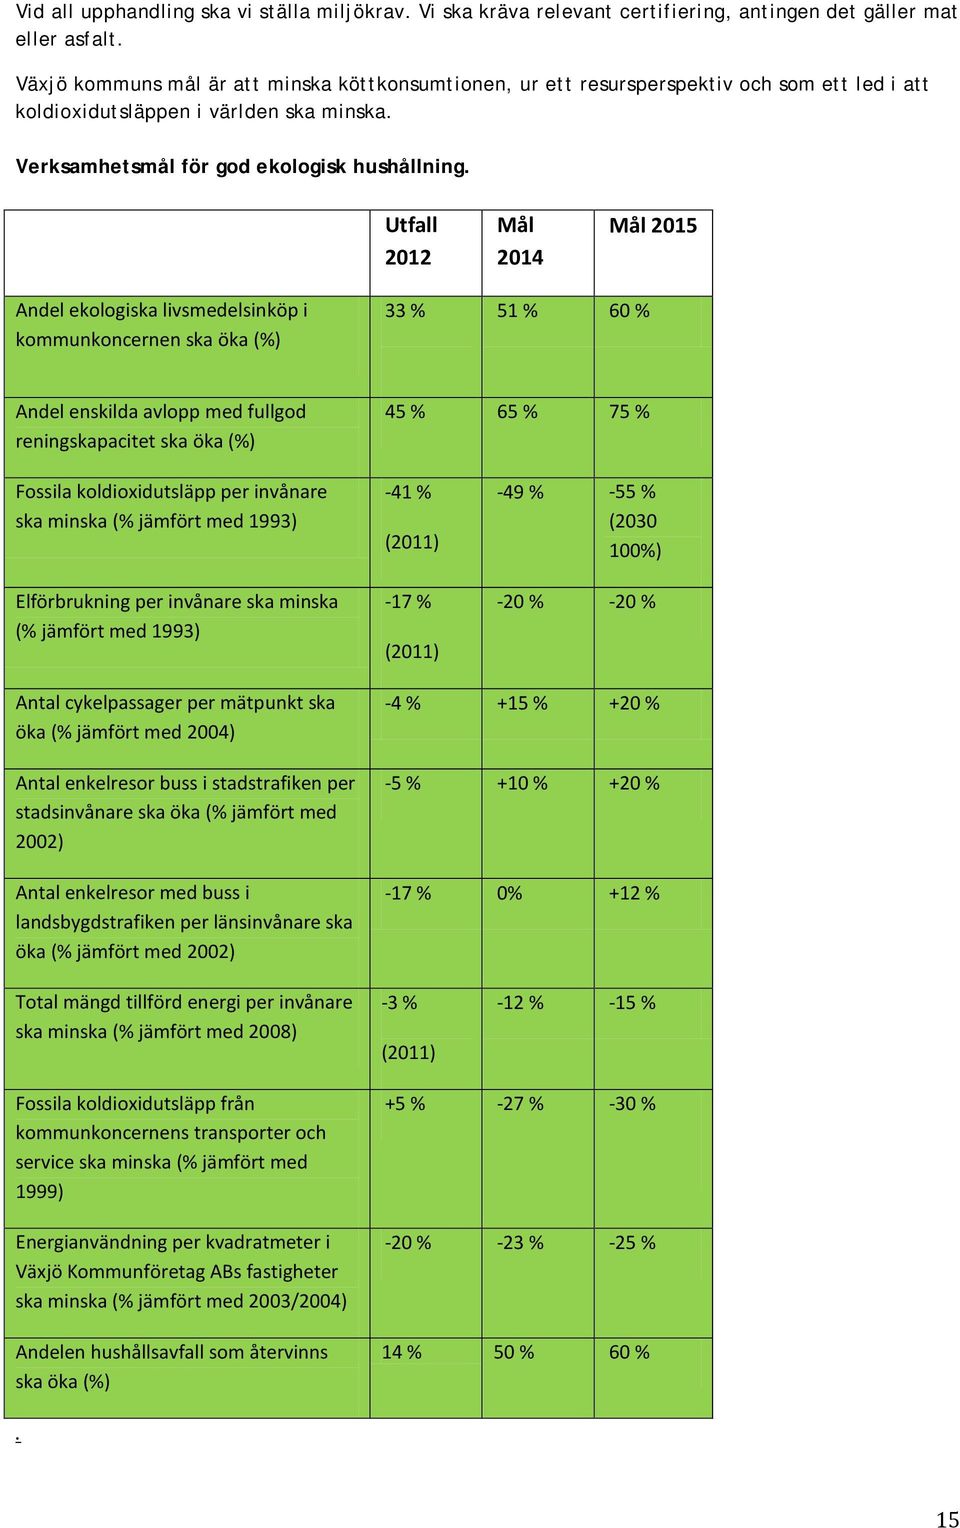 Utfall 2012 Mål 2014 Mål 2015 Andel ekologiska livsmedelsinköp i kommunkoncernen ska öka (%) 33 % 51 % 60 % Andel enskilda avlopp med fullgod reningskapacitet ska öka (%) 45 % 65 % 75 % Fossila